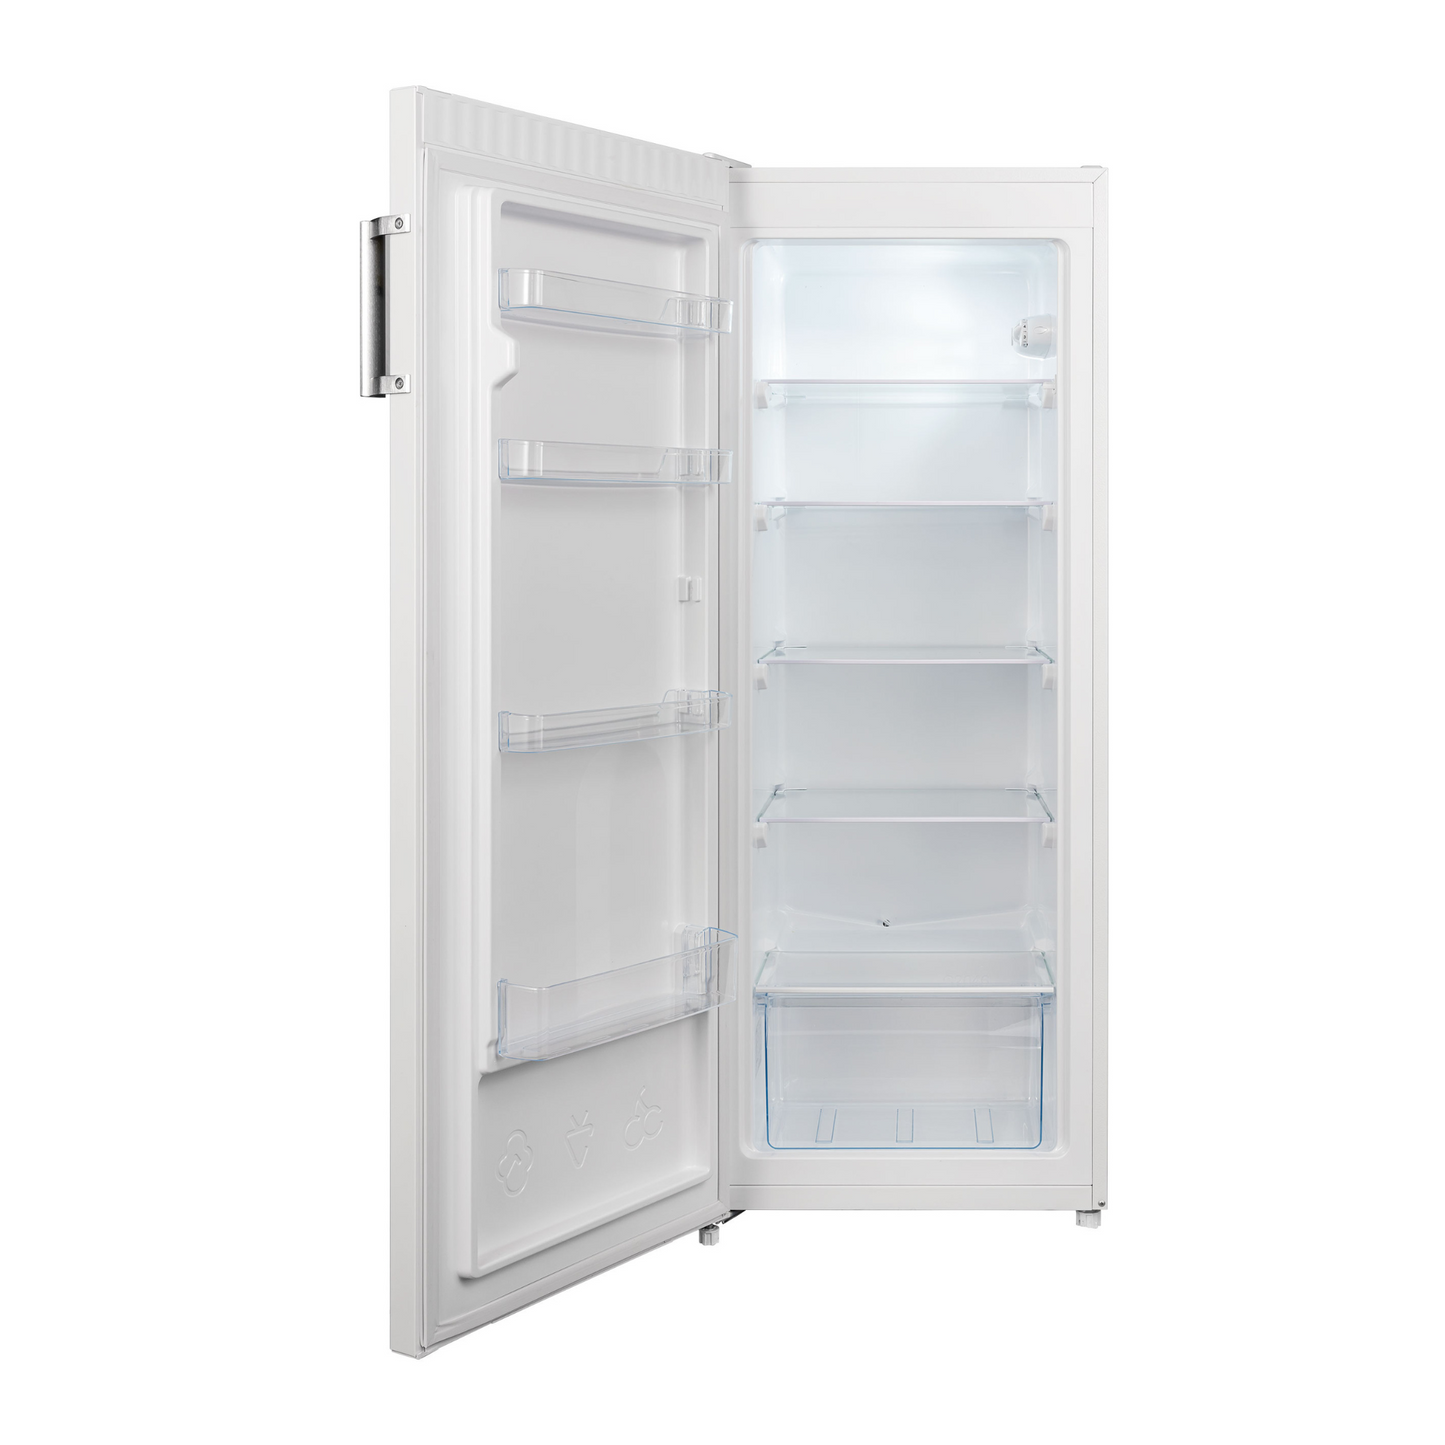 ChiQ 205L Refrigerator, CSR205DW